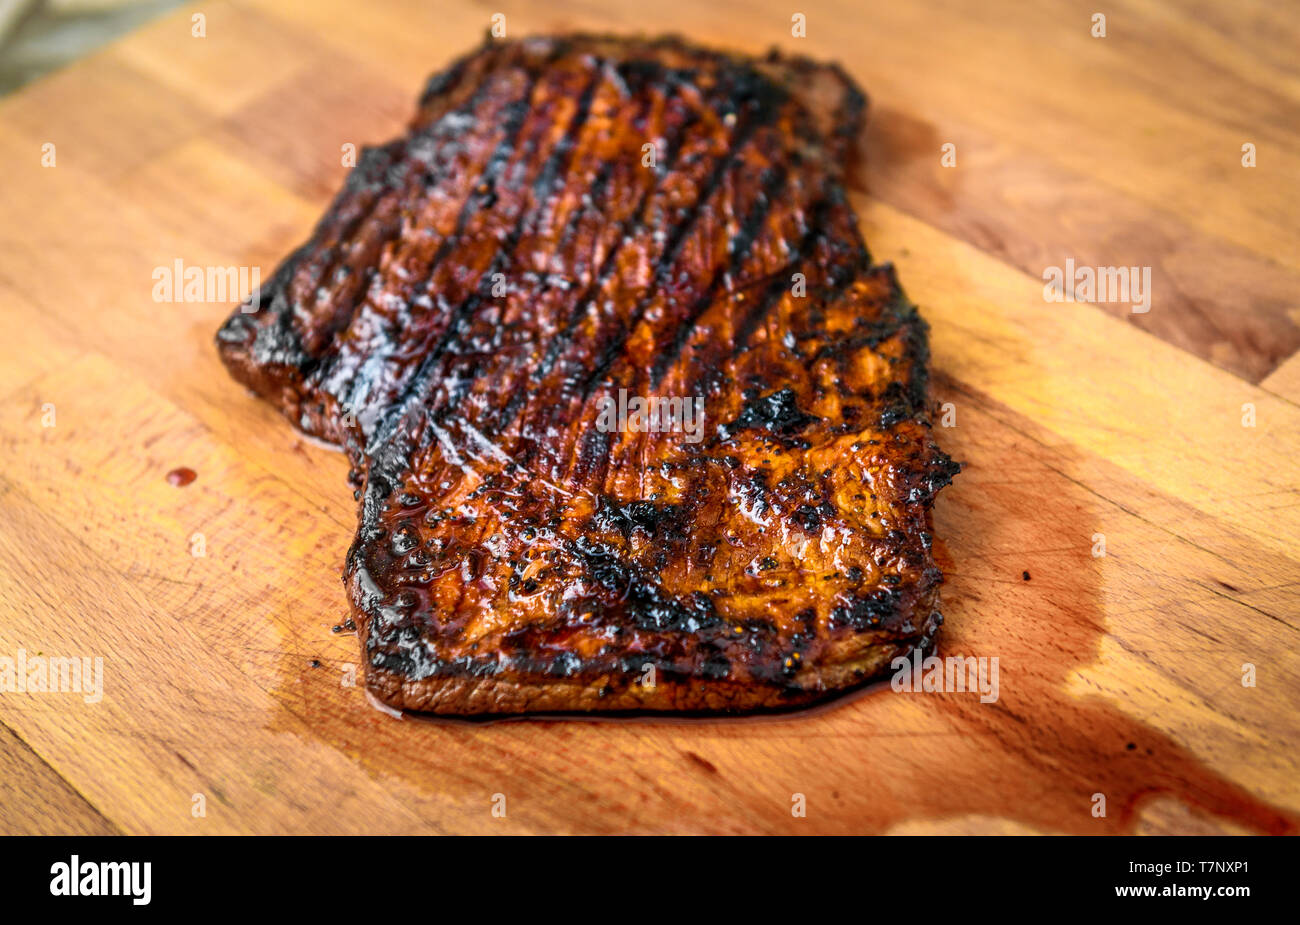 Saftig gegrillte marinierte Angus Beef Flank Steak auf Holzbrett. Fertige saftige medium Fleisch ruht, bevor es geschnitten ist und in Scheiben geschnitten. Stockfoto